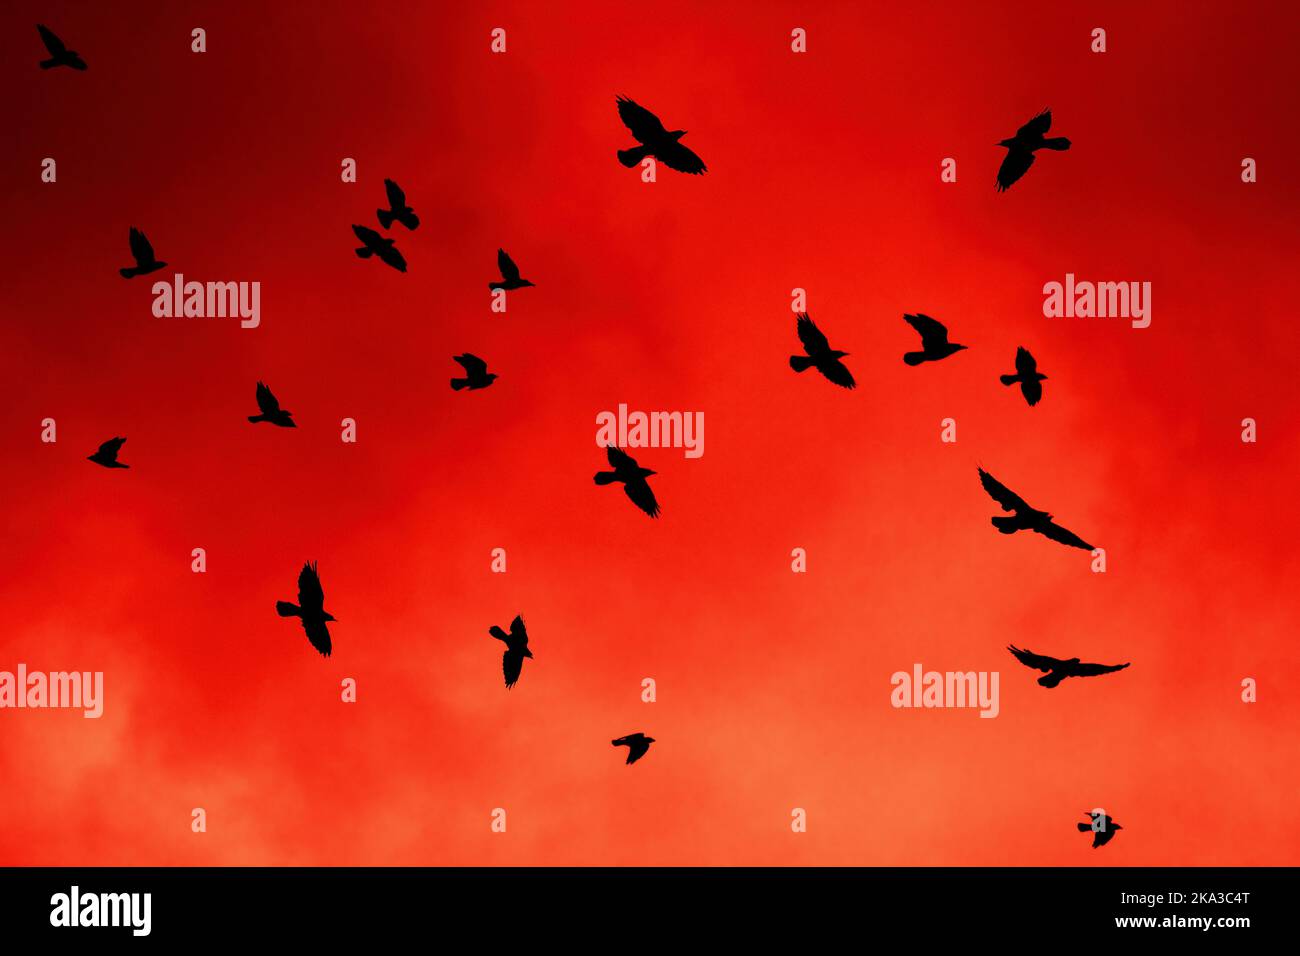 Krähen im roten Sonnenuntergangshimmel mehrere Krähen Silhouetten 19 fliegen gegen den leuchtend rot-orangenen Himmel im Landschaftsformat künstlerische Effekte Klonen der Größe der Farbe Stockfoto